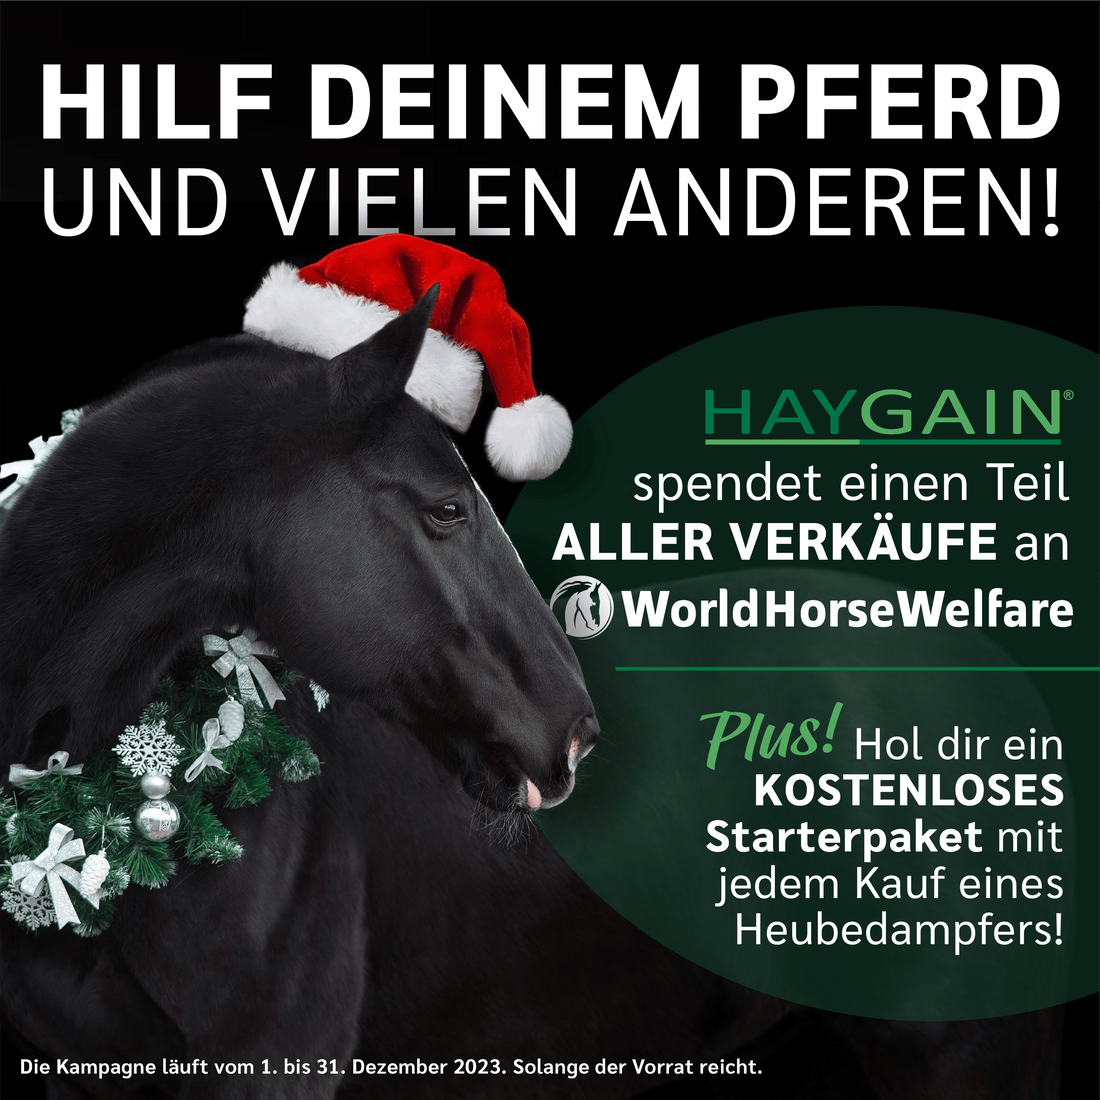 Haygain Bestellungen unterstützen World Horse Welfare während des gesamten Dezembers.